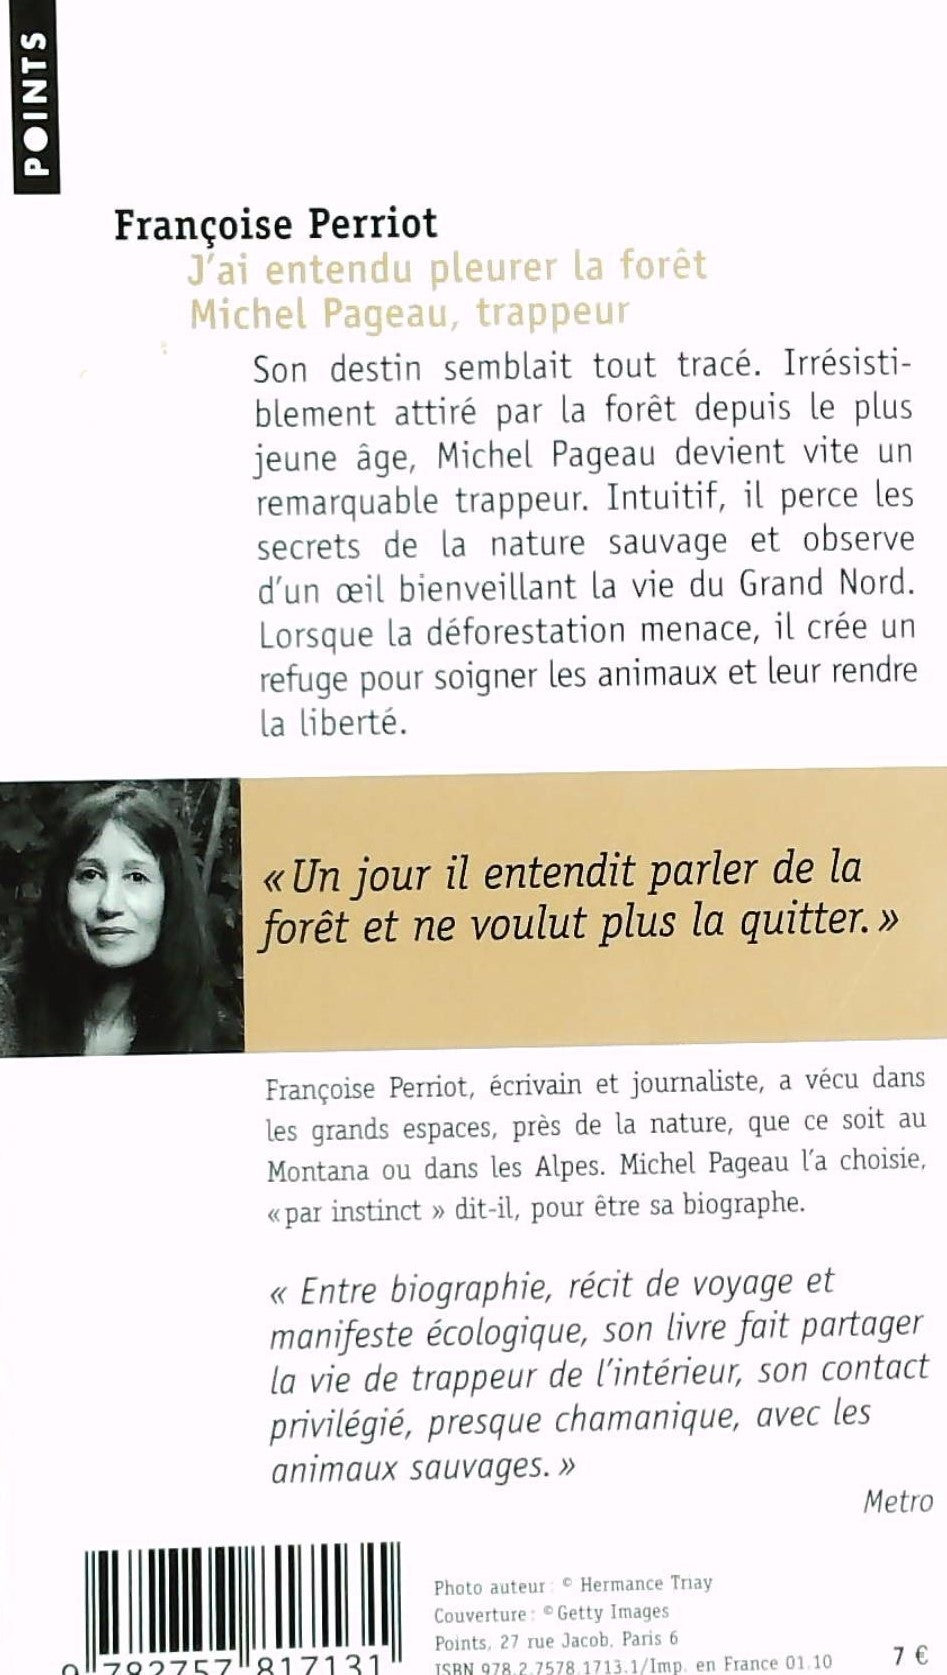 J'ai entendu pleurer la forêt (Françoise Perriot)